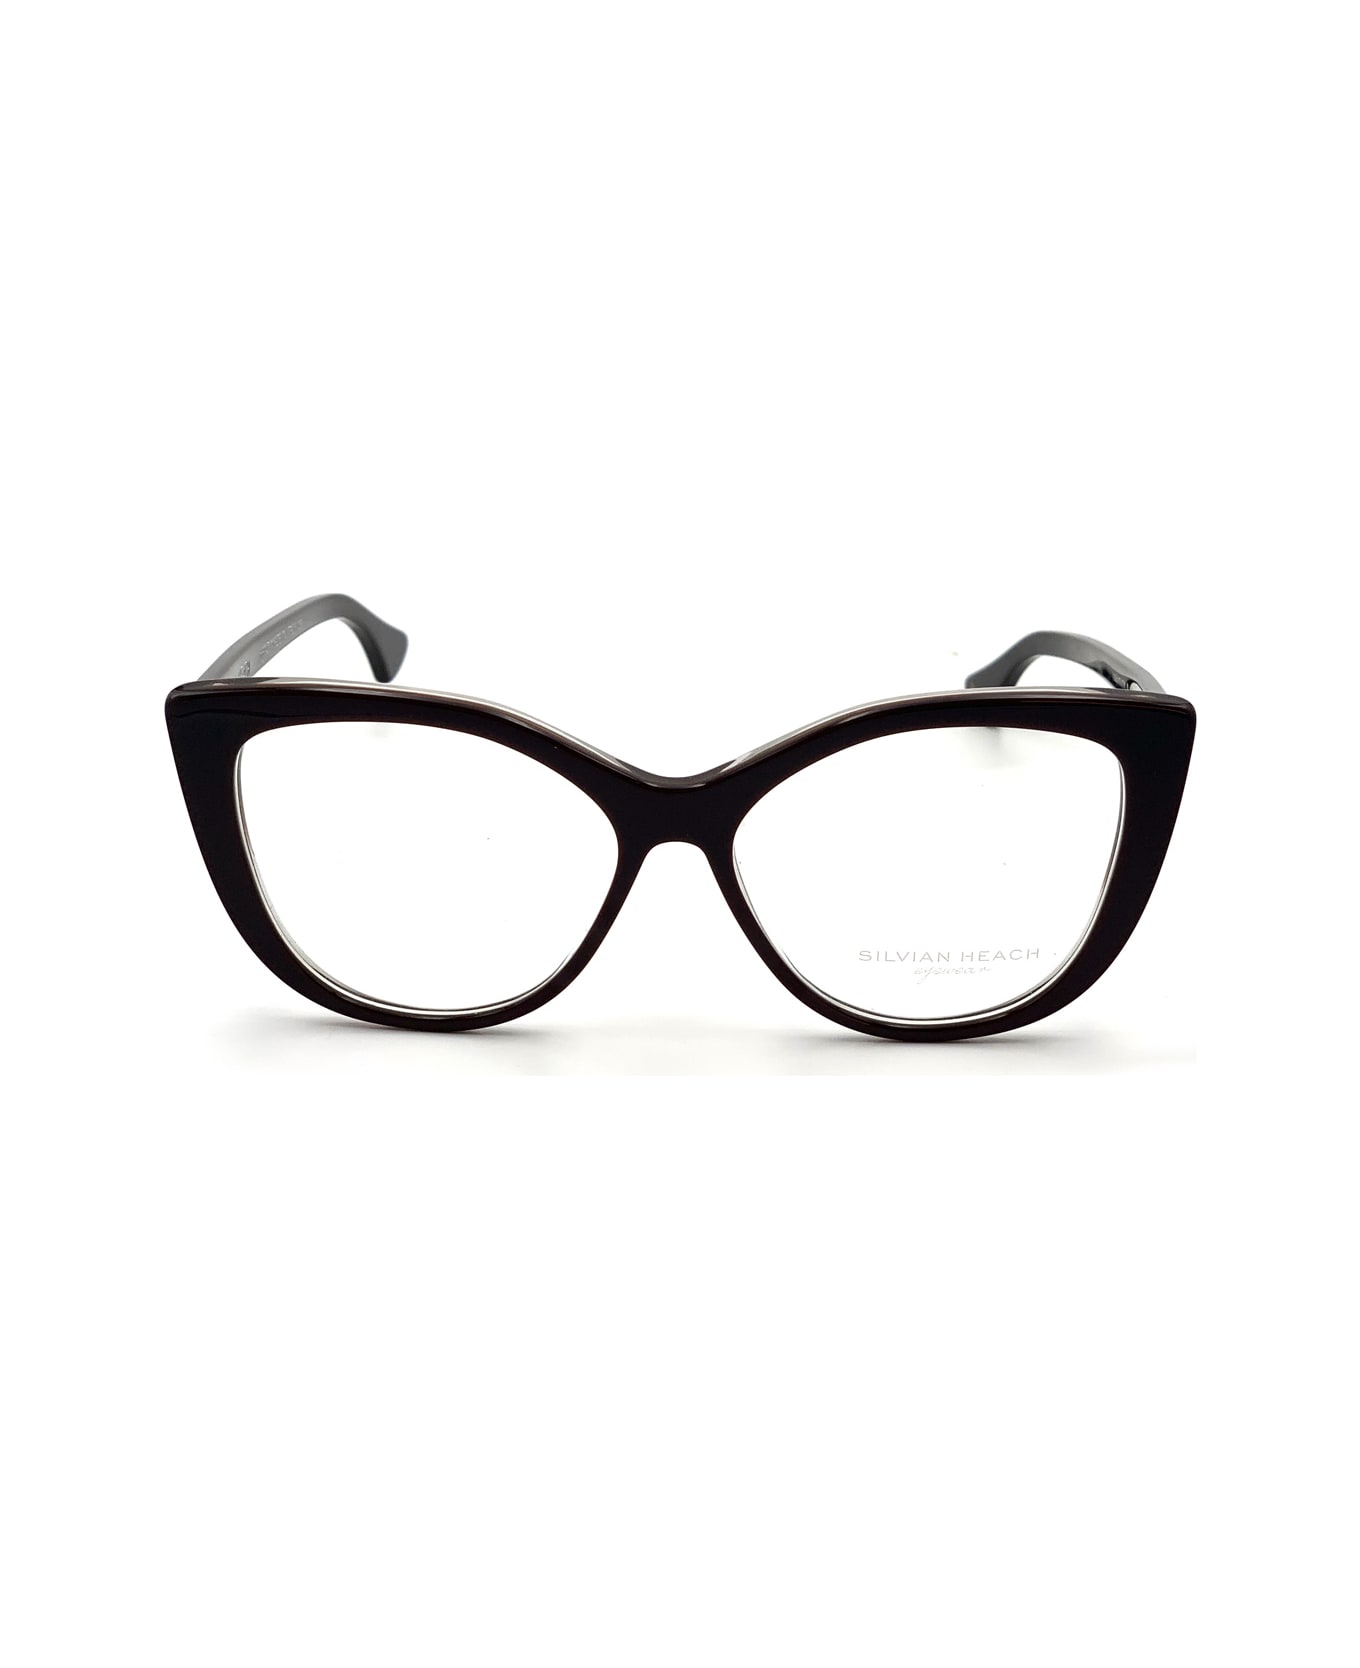 Silvian Heach Identity Glasses - Marrone